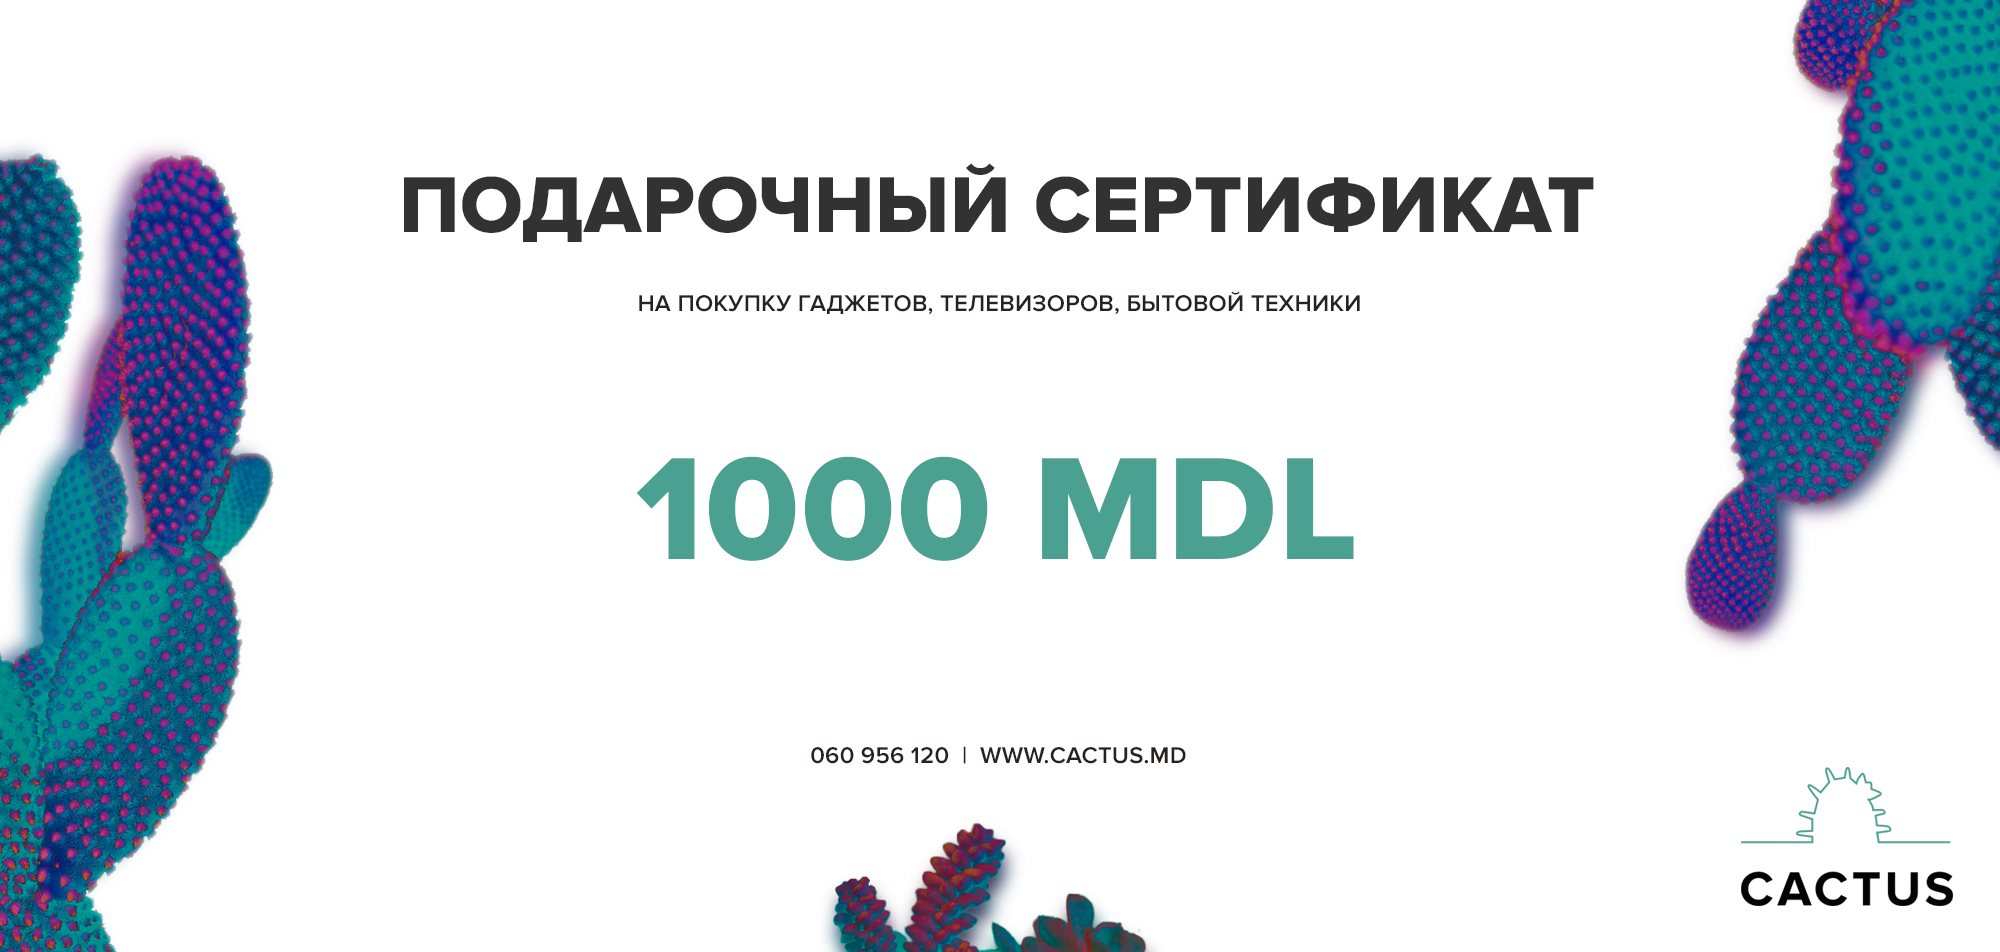 Подарочный сертификат - 1000 mdl